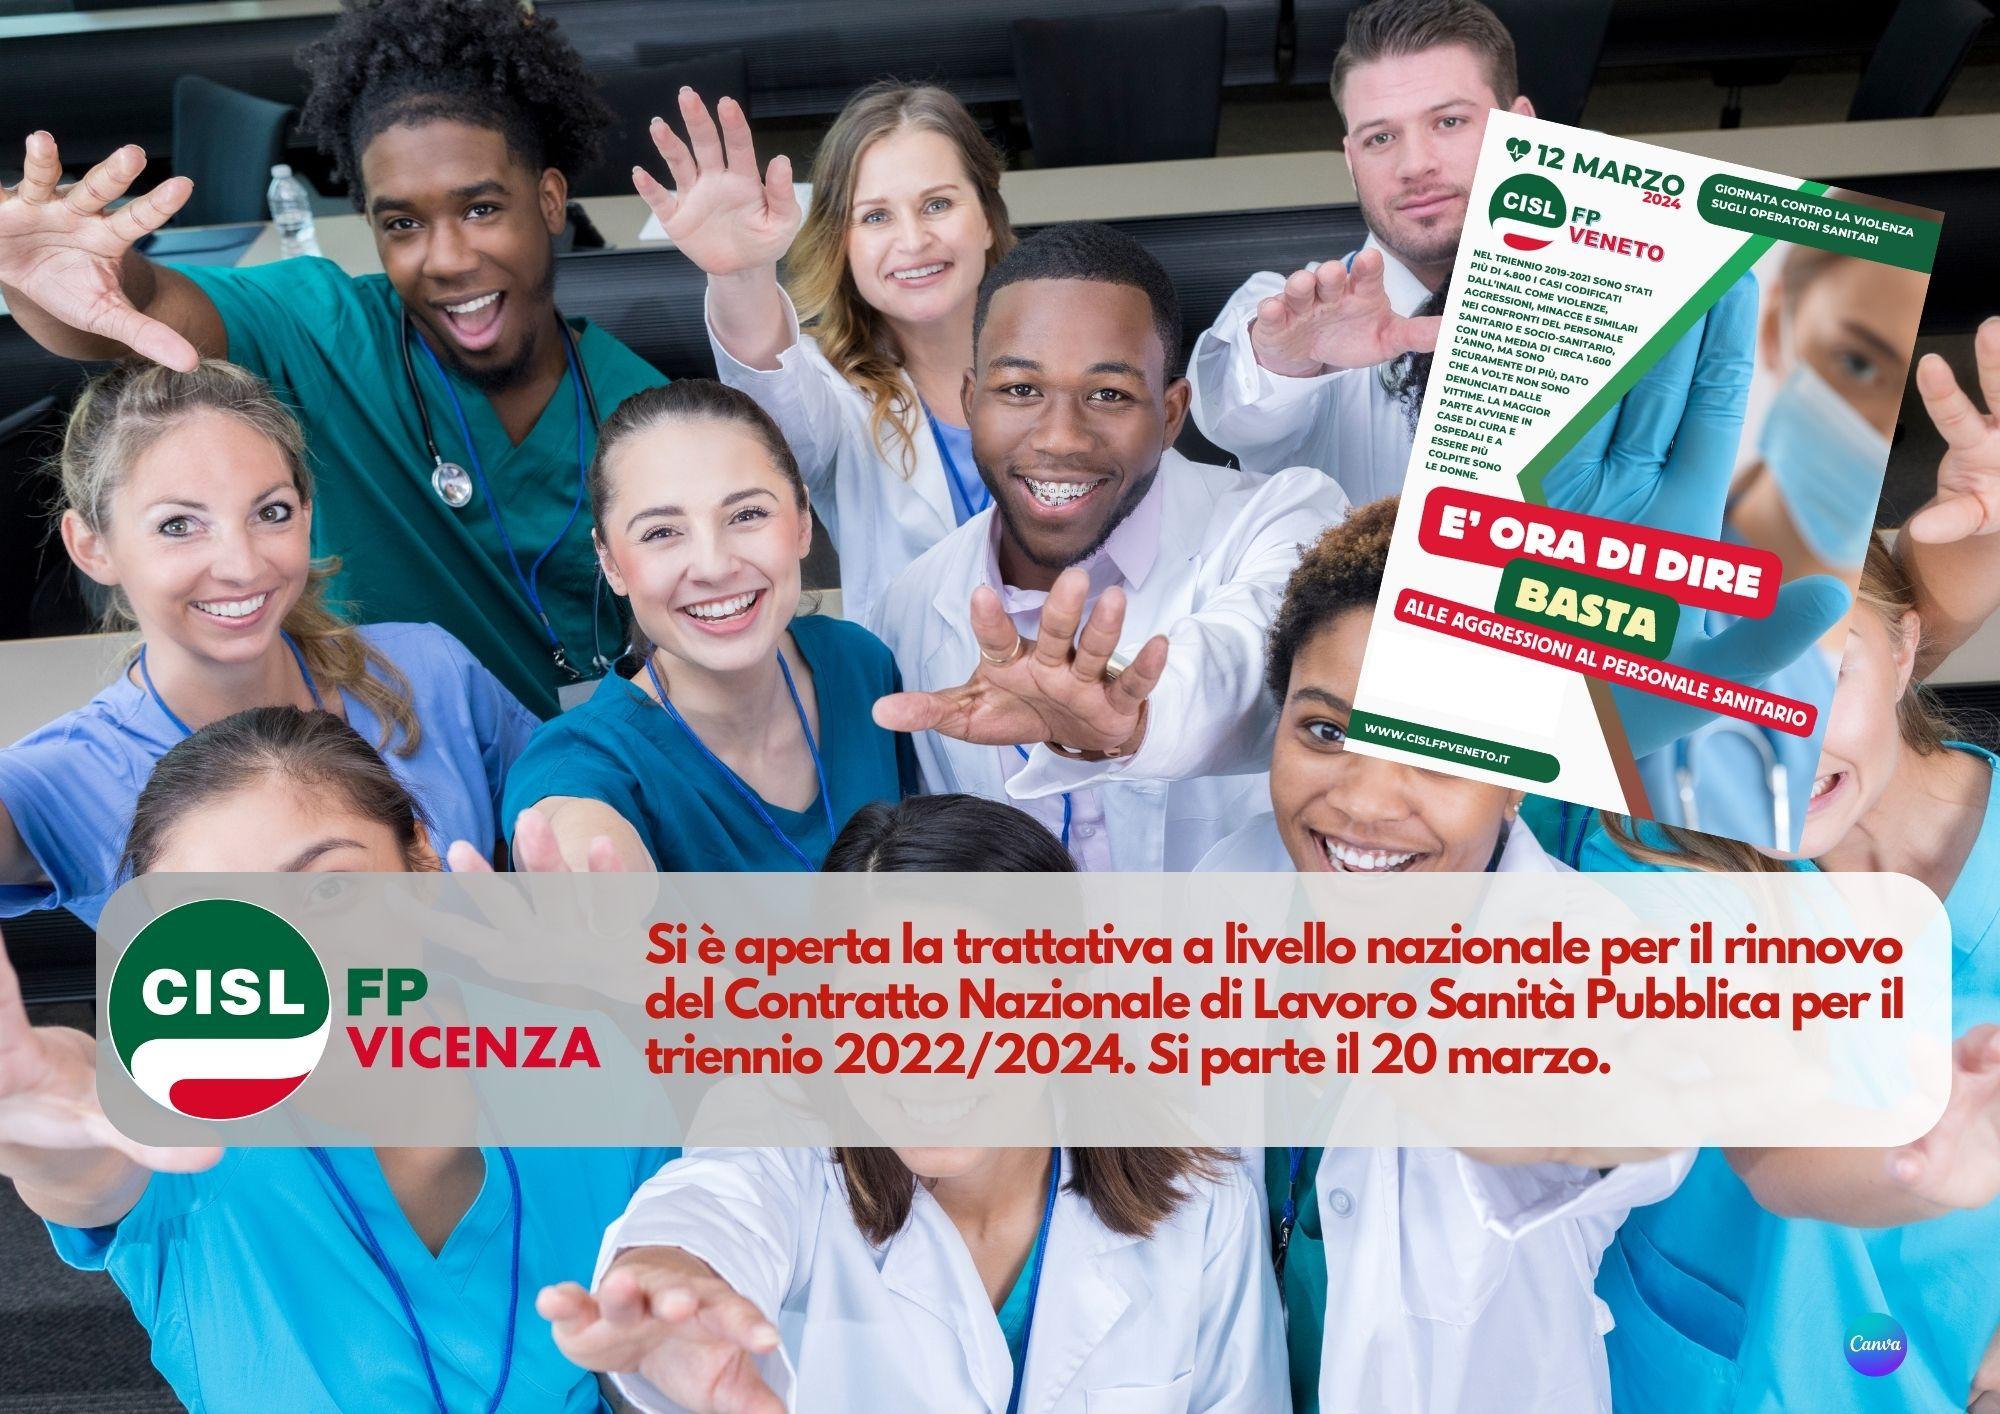 CISL FP Vicenza. Contratto Sanità pubblica 2022/2024. Aperta la trattativa: si parte il 20 marzo